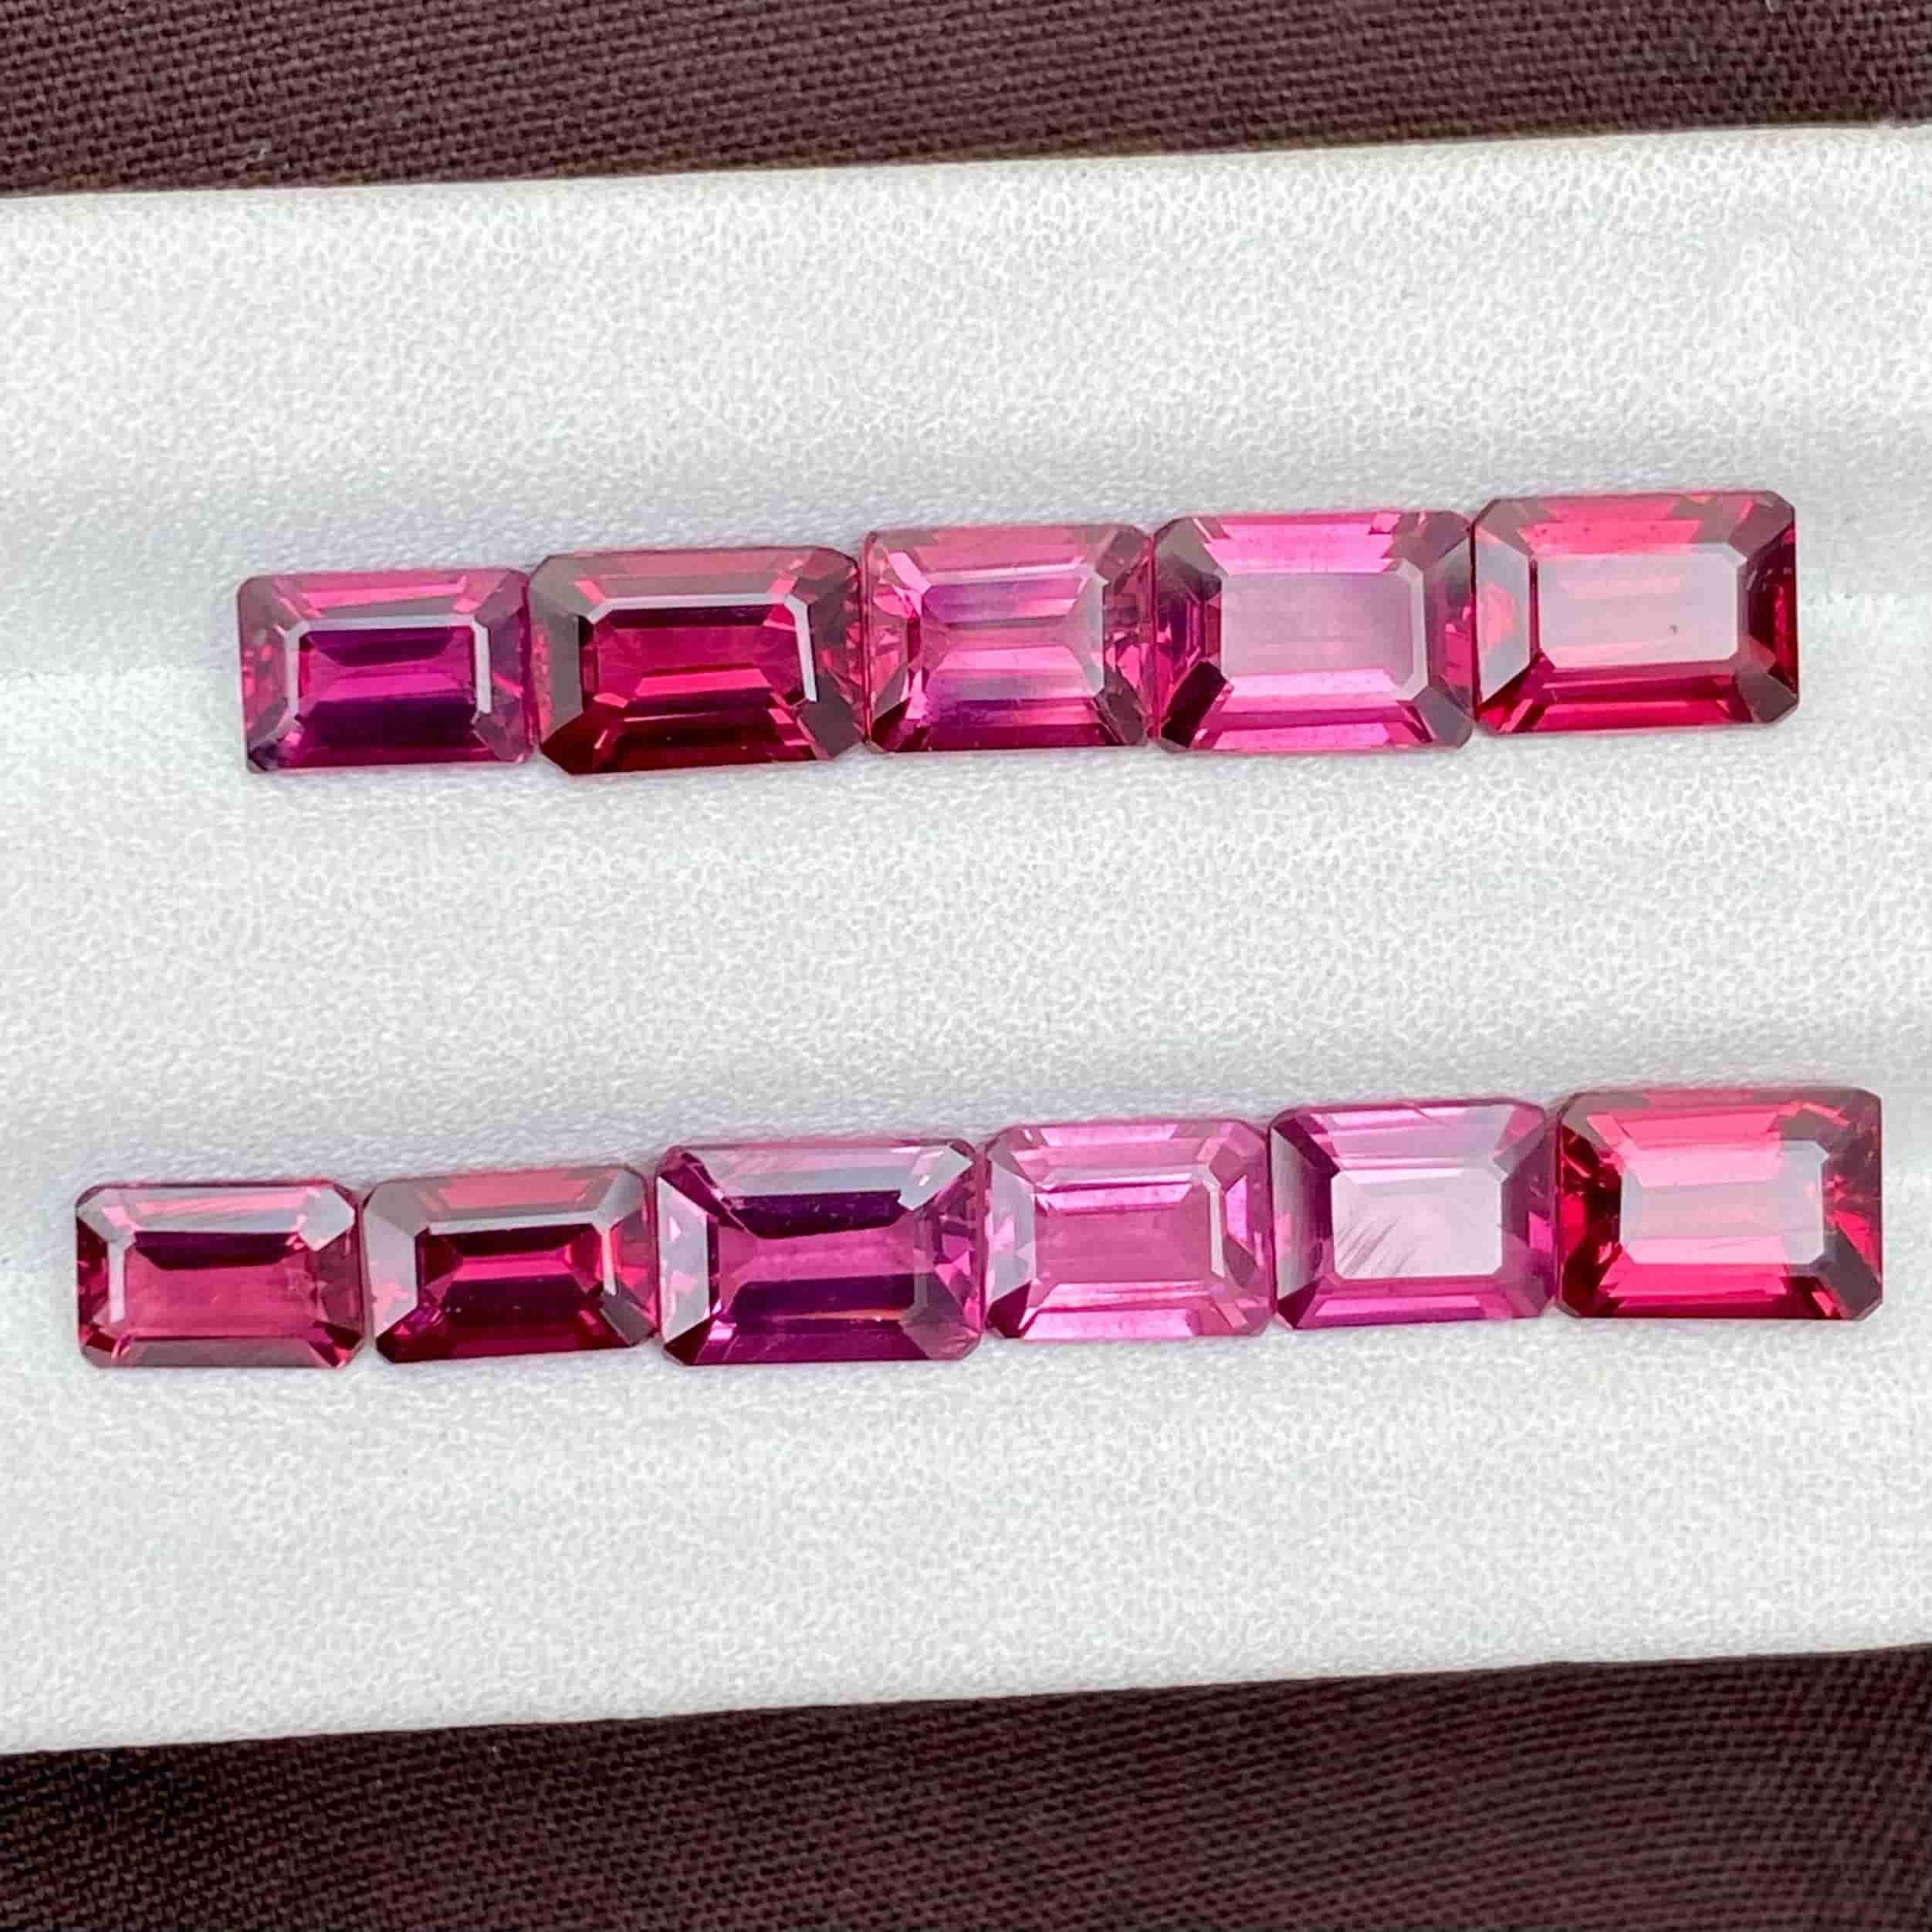 Modern 11.40 Carats Pink Rhodolite Garnet Lot Natural Gemstones From Africa For Sale